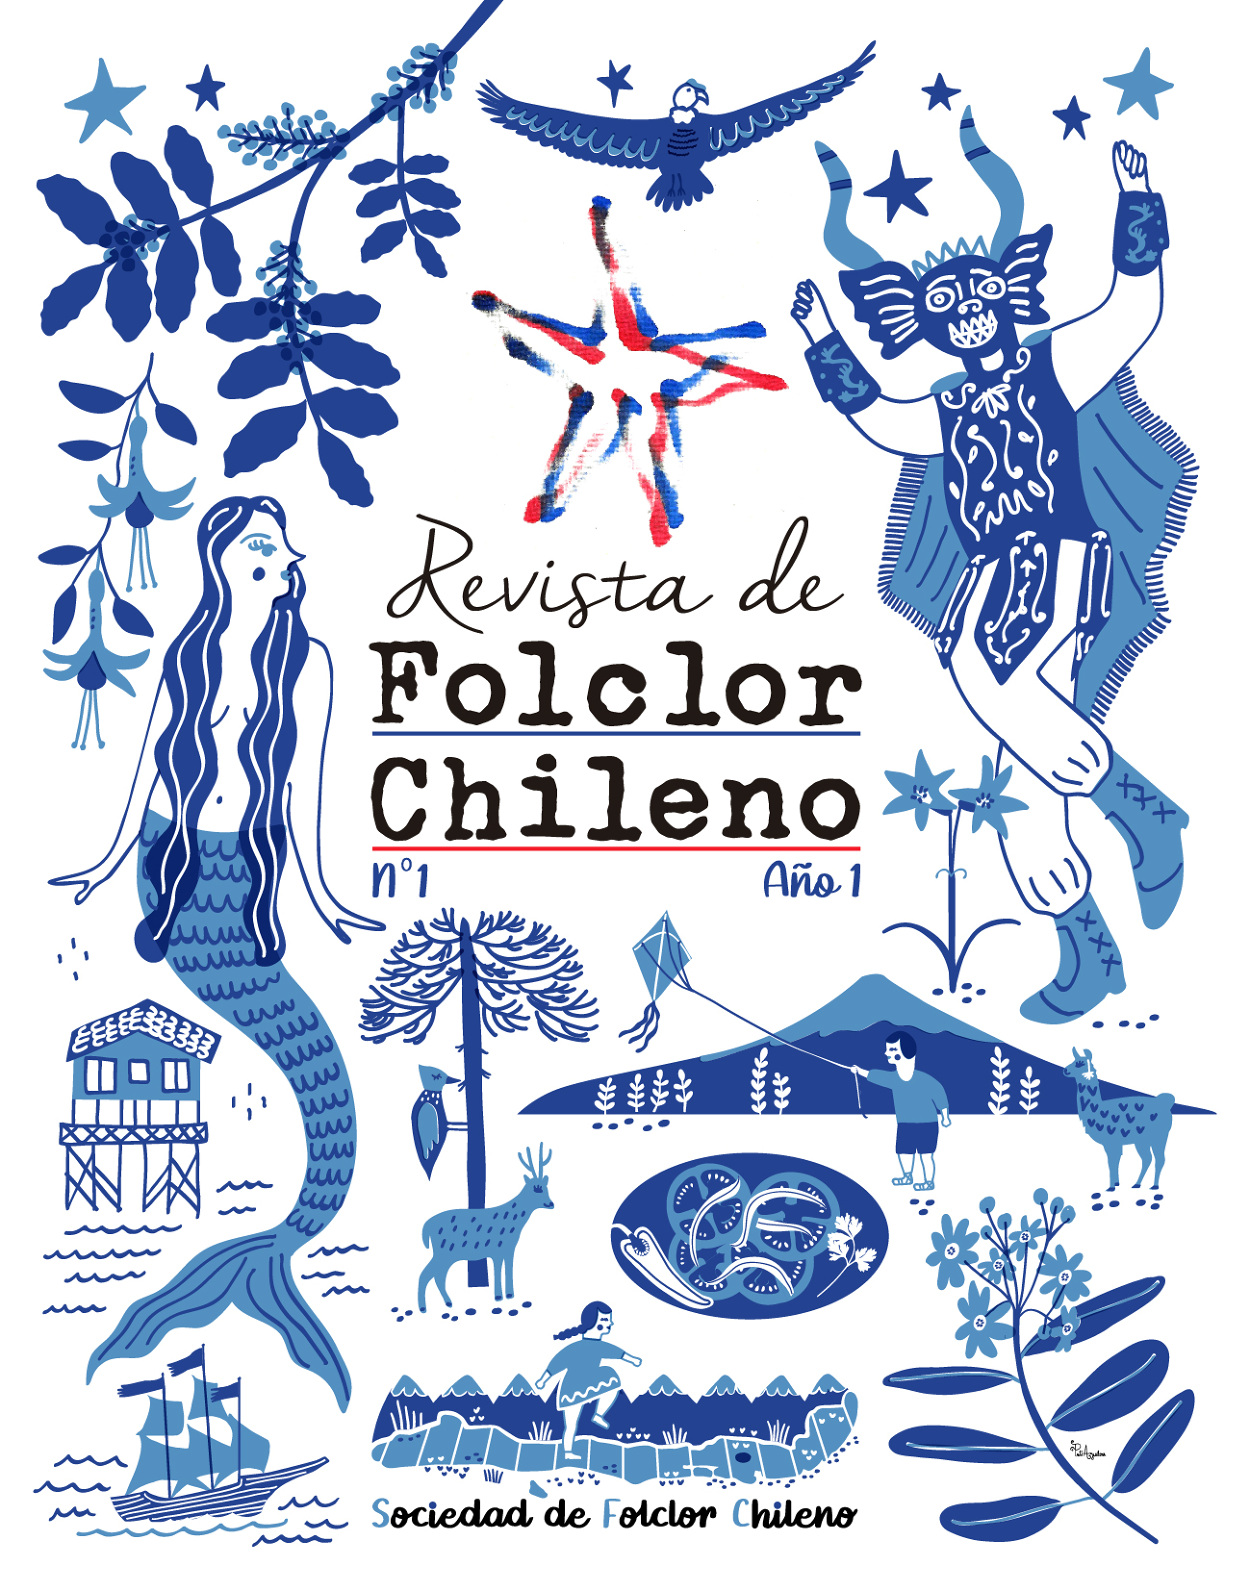 Pati_A_2022_Revista-Folclor-Chileno01